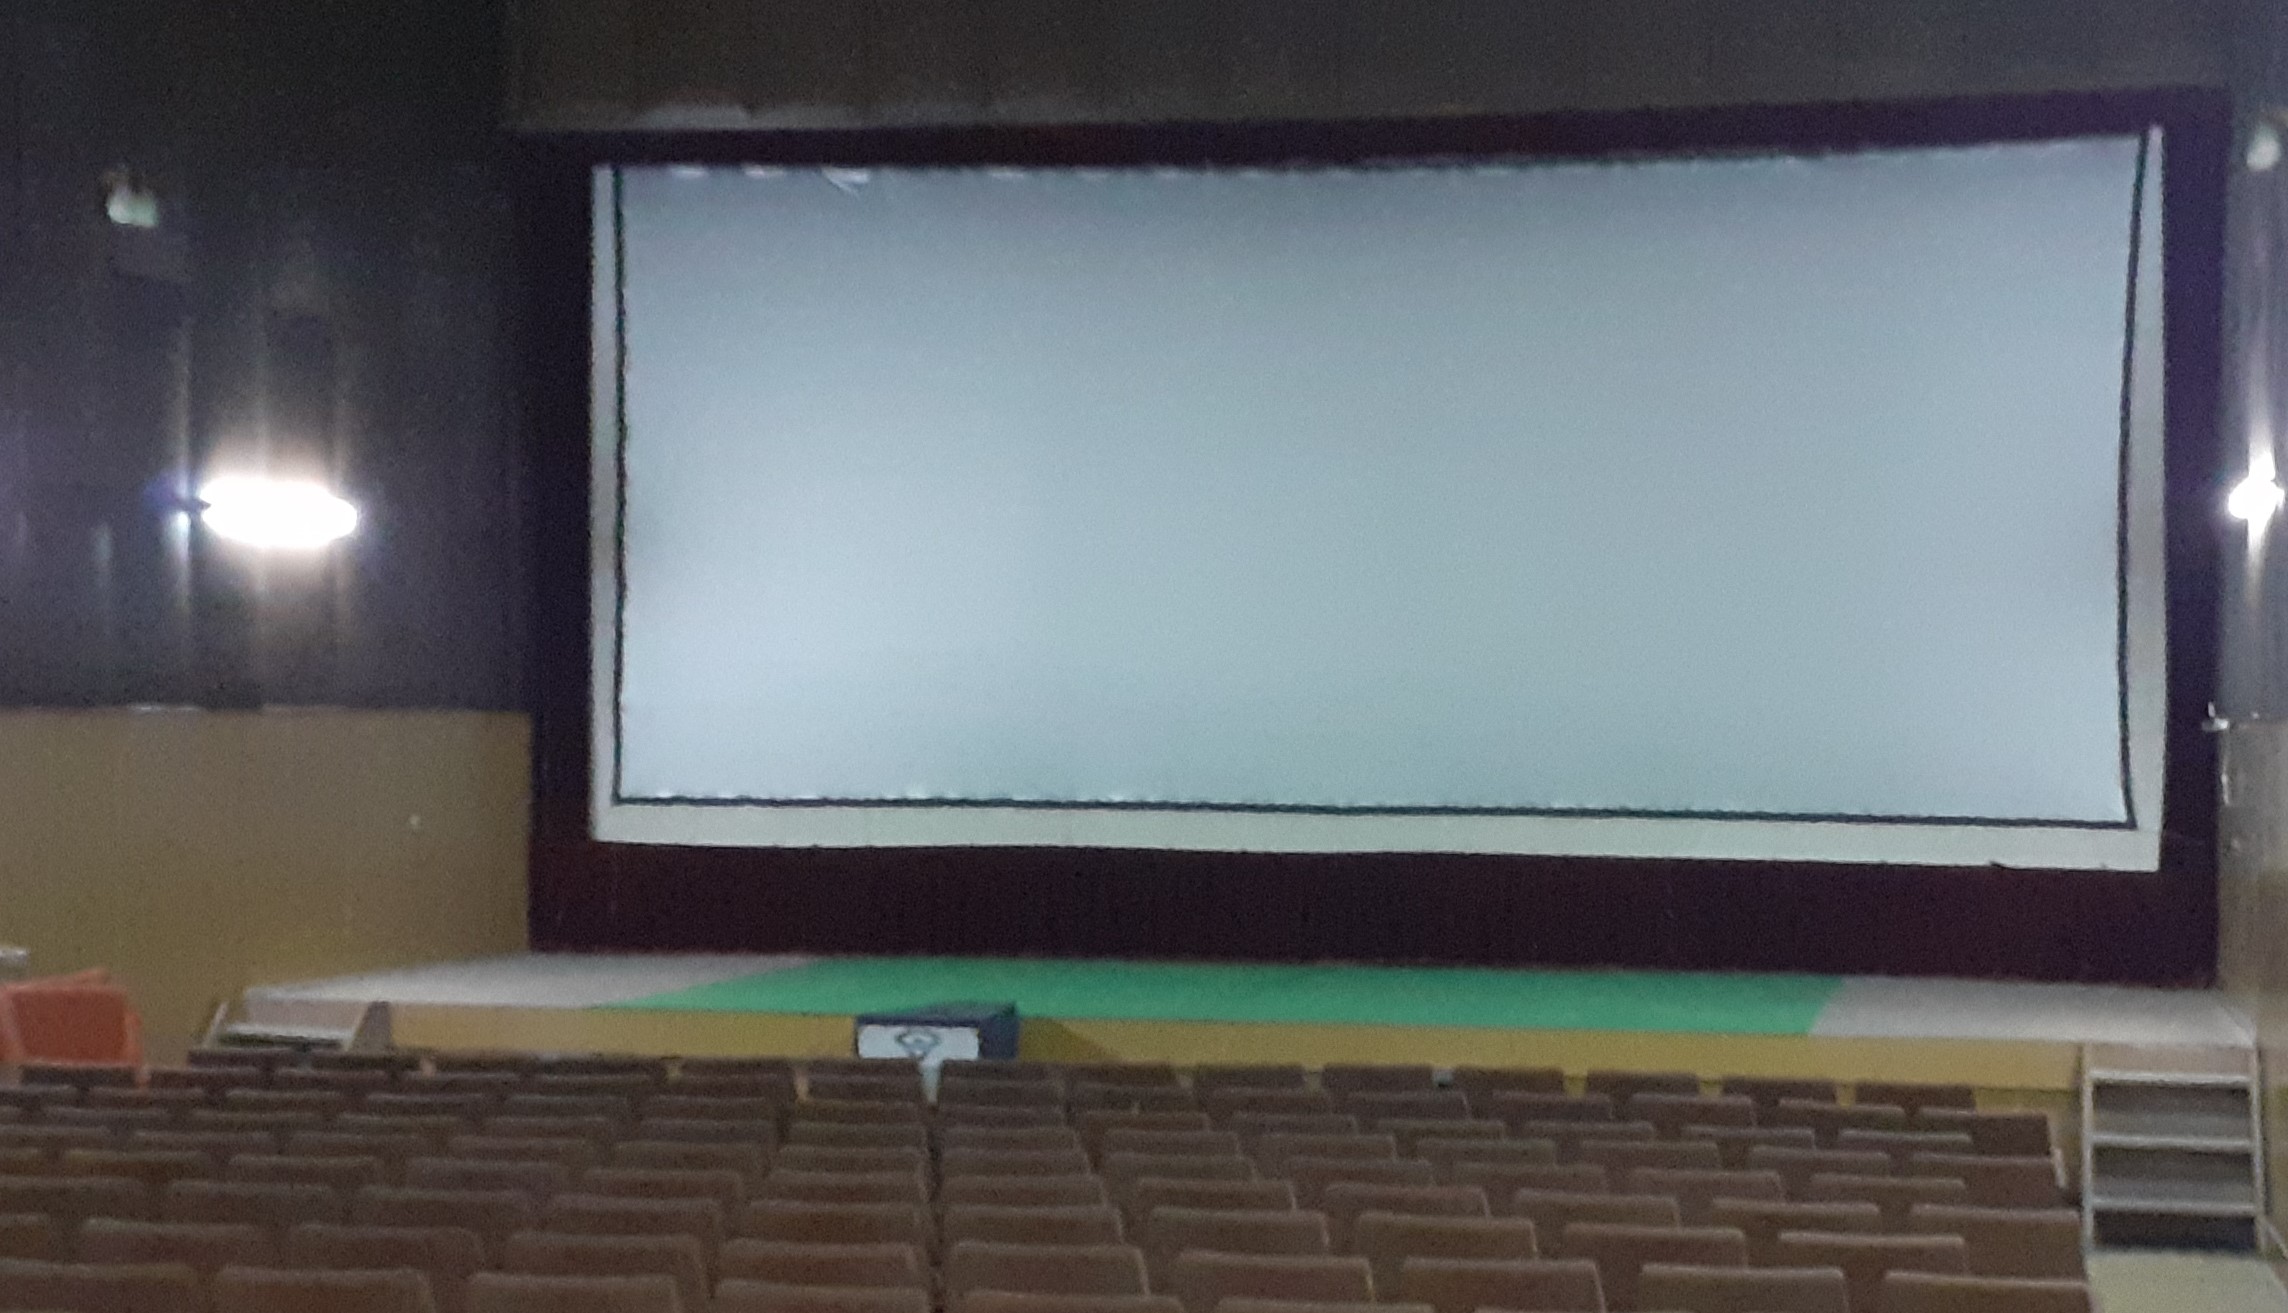 Latona Cinema